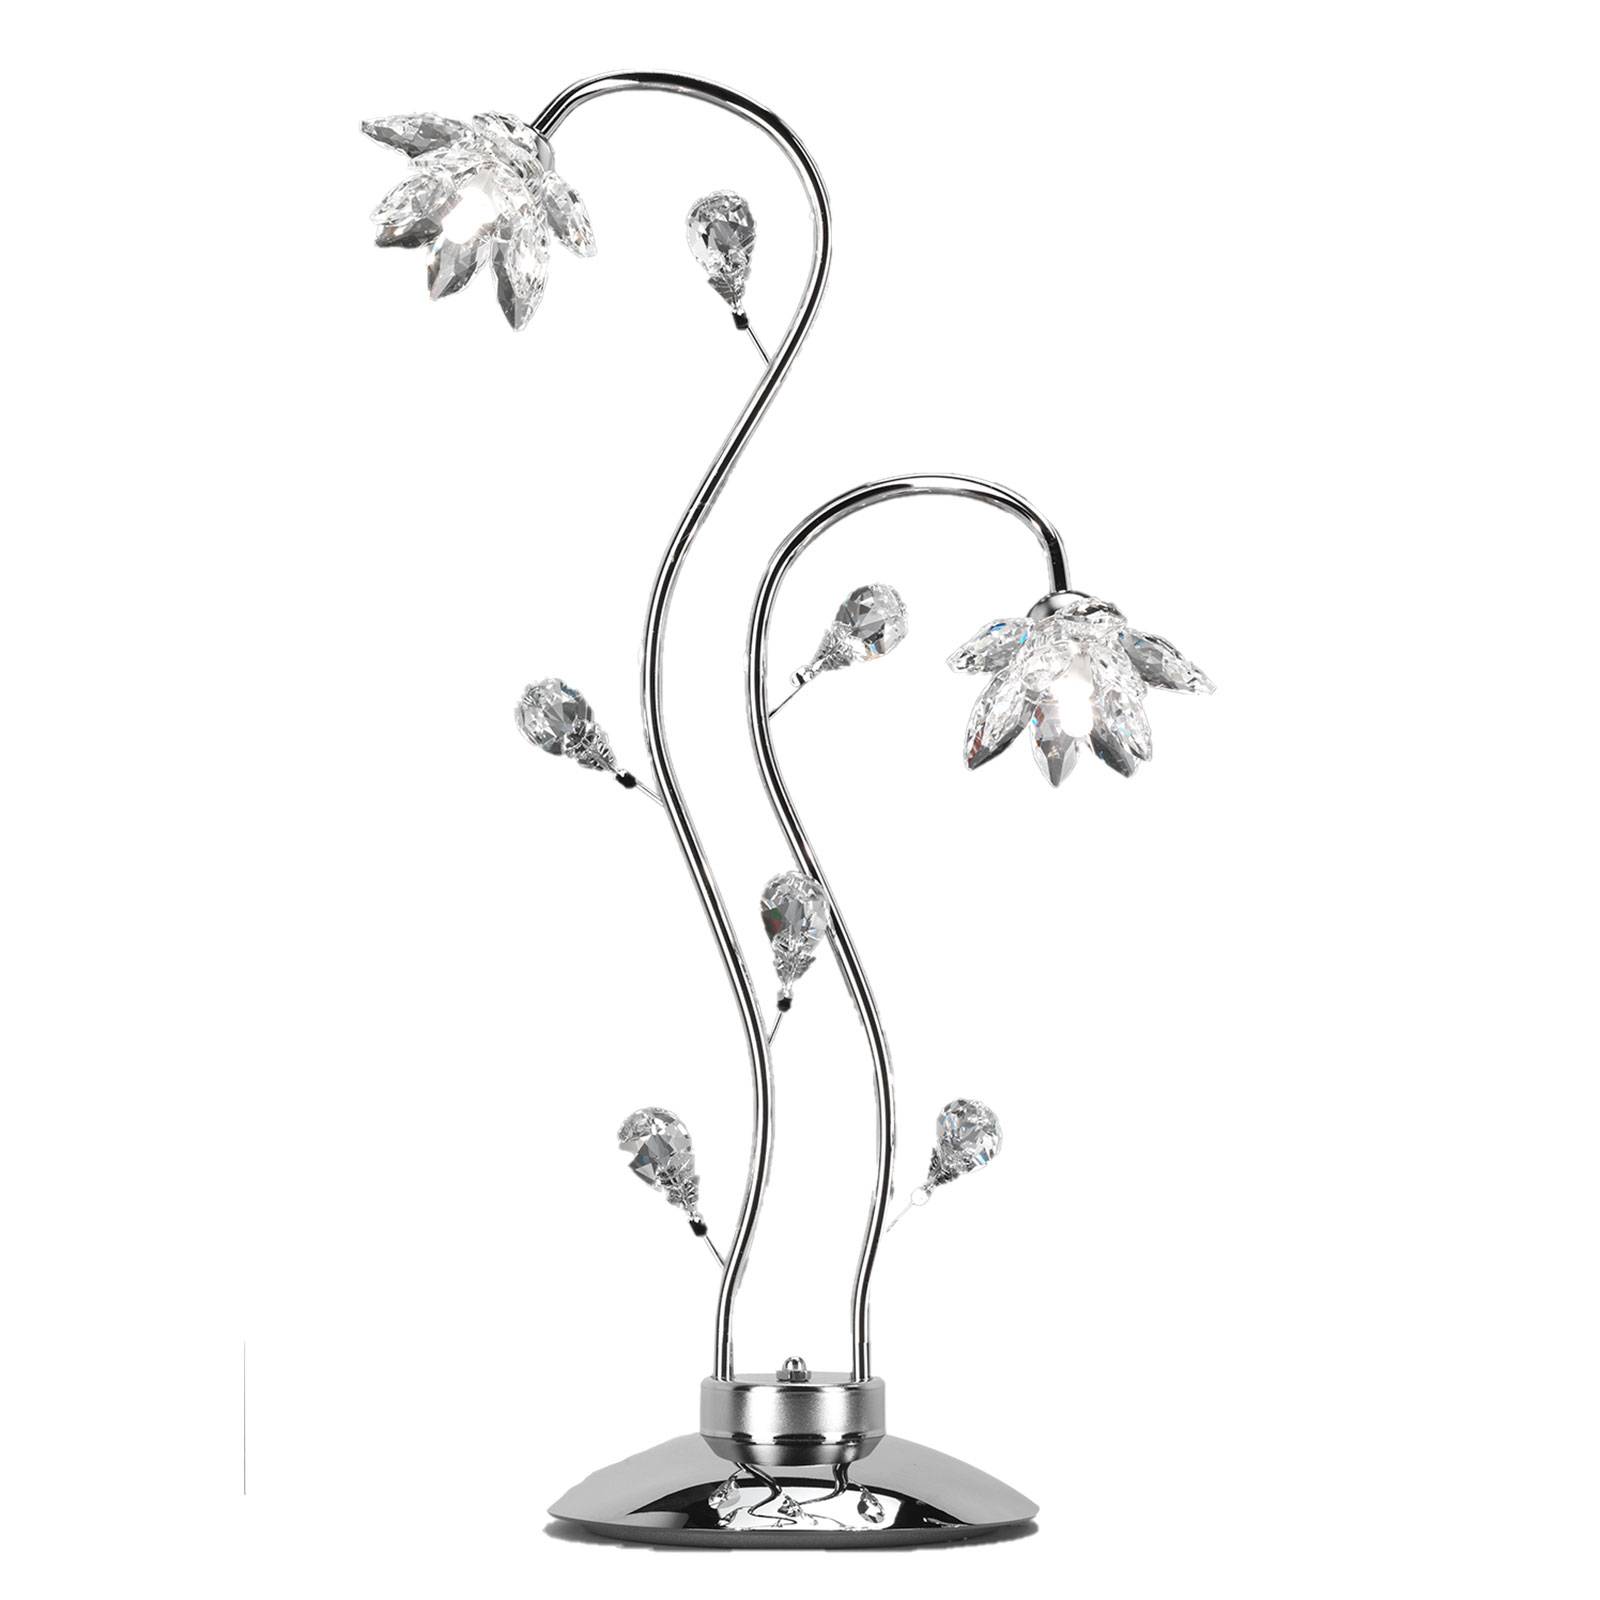 Tischleuchte Ninfea, Chrom, Kristallblüten, 80 cm